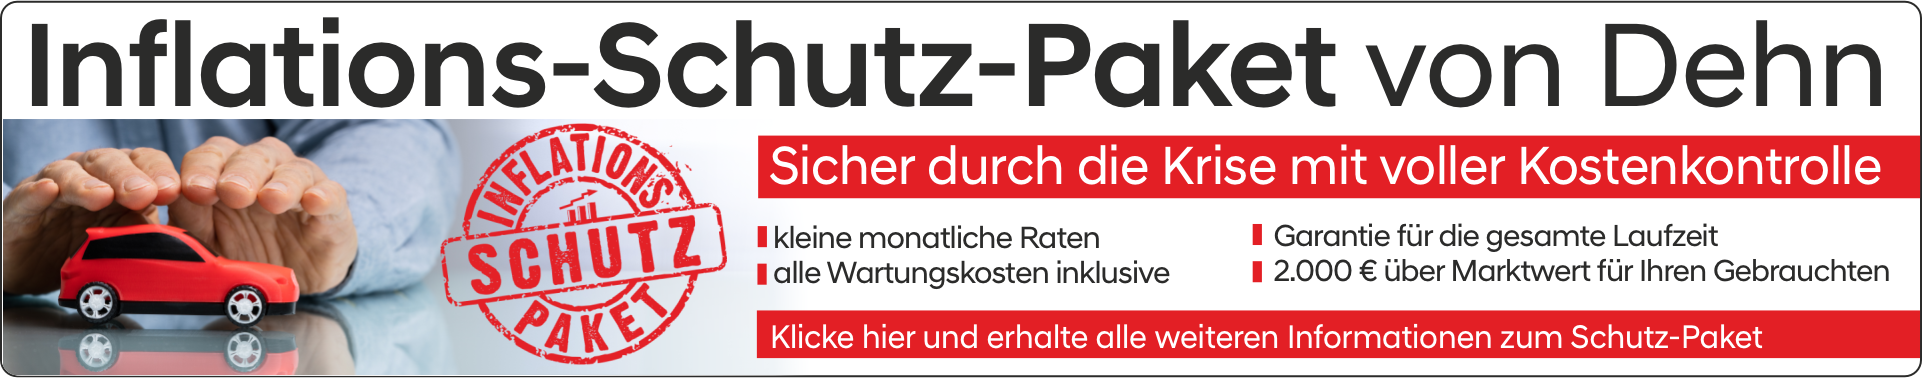 Banner Inflations Schutz Paket